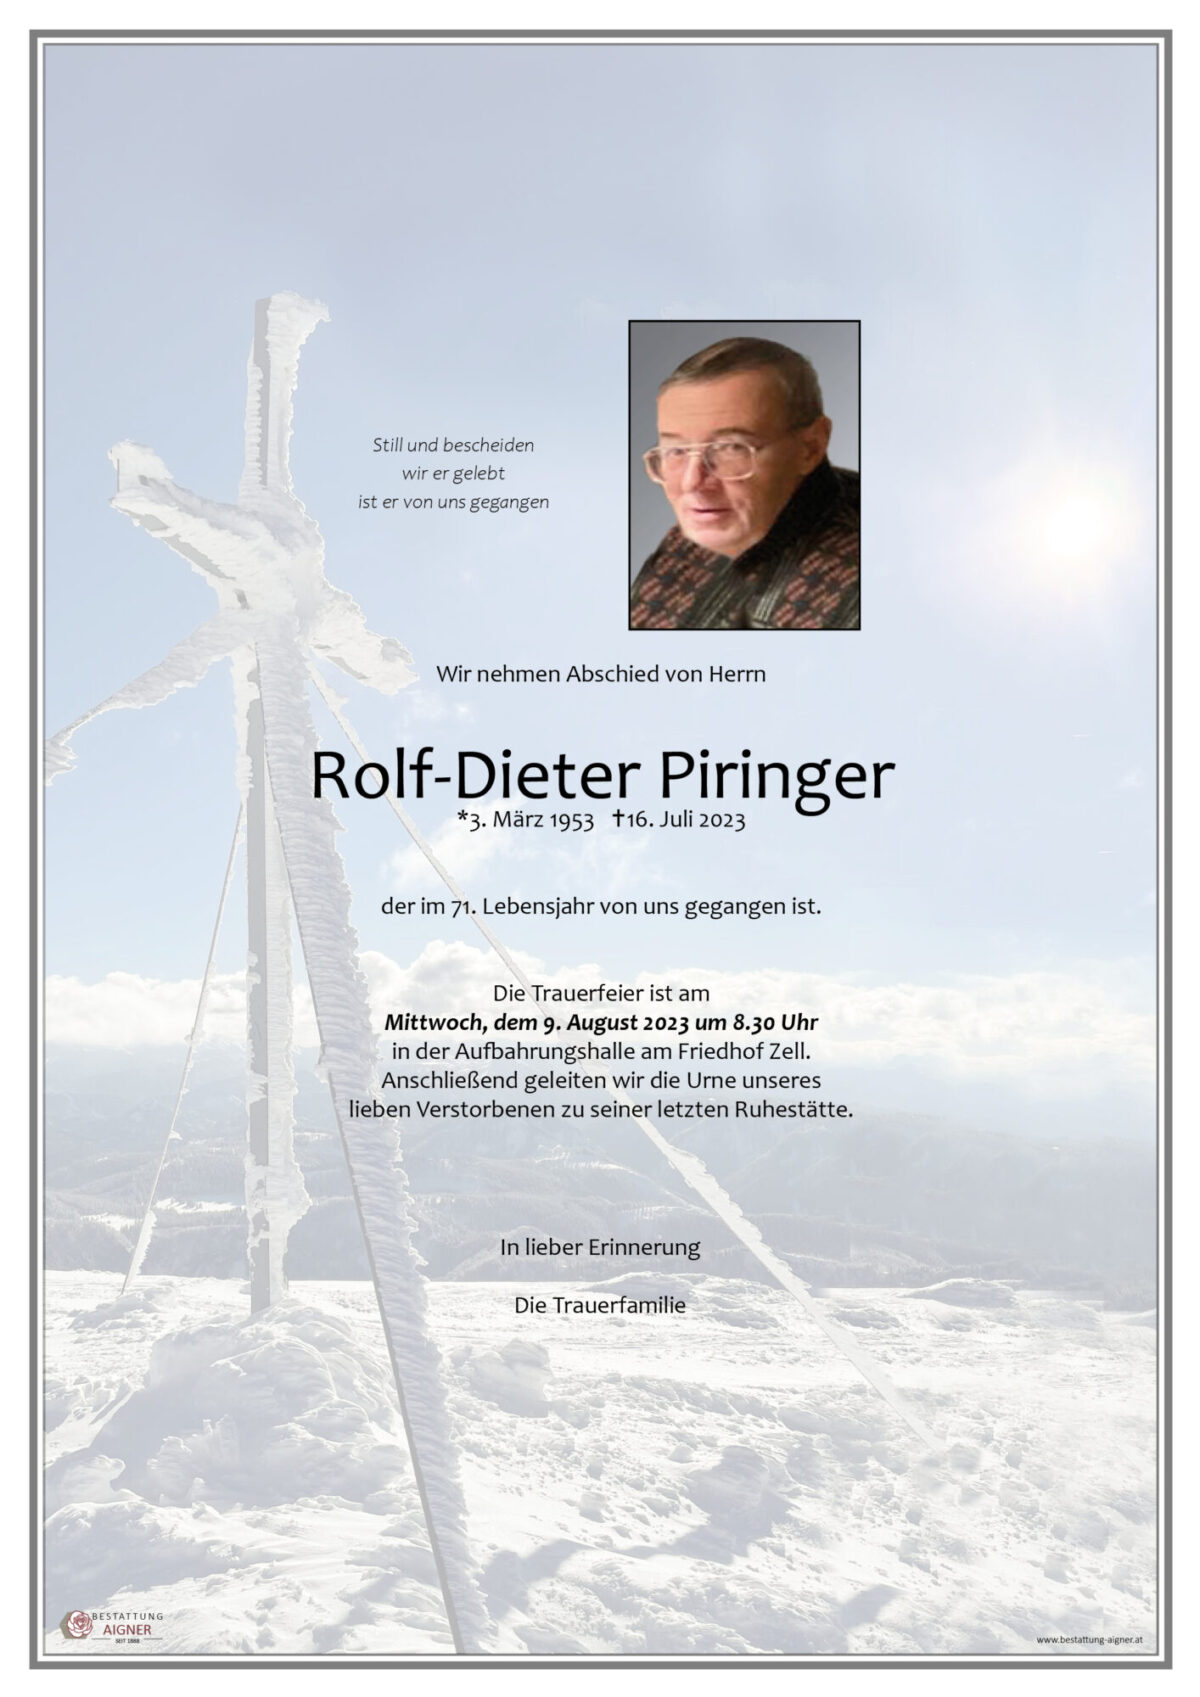 Rolf-Dieter Piringer